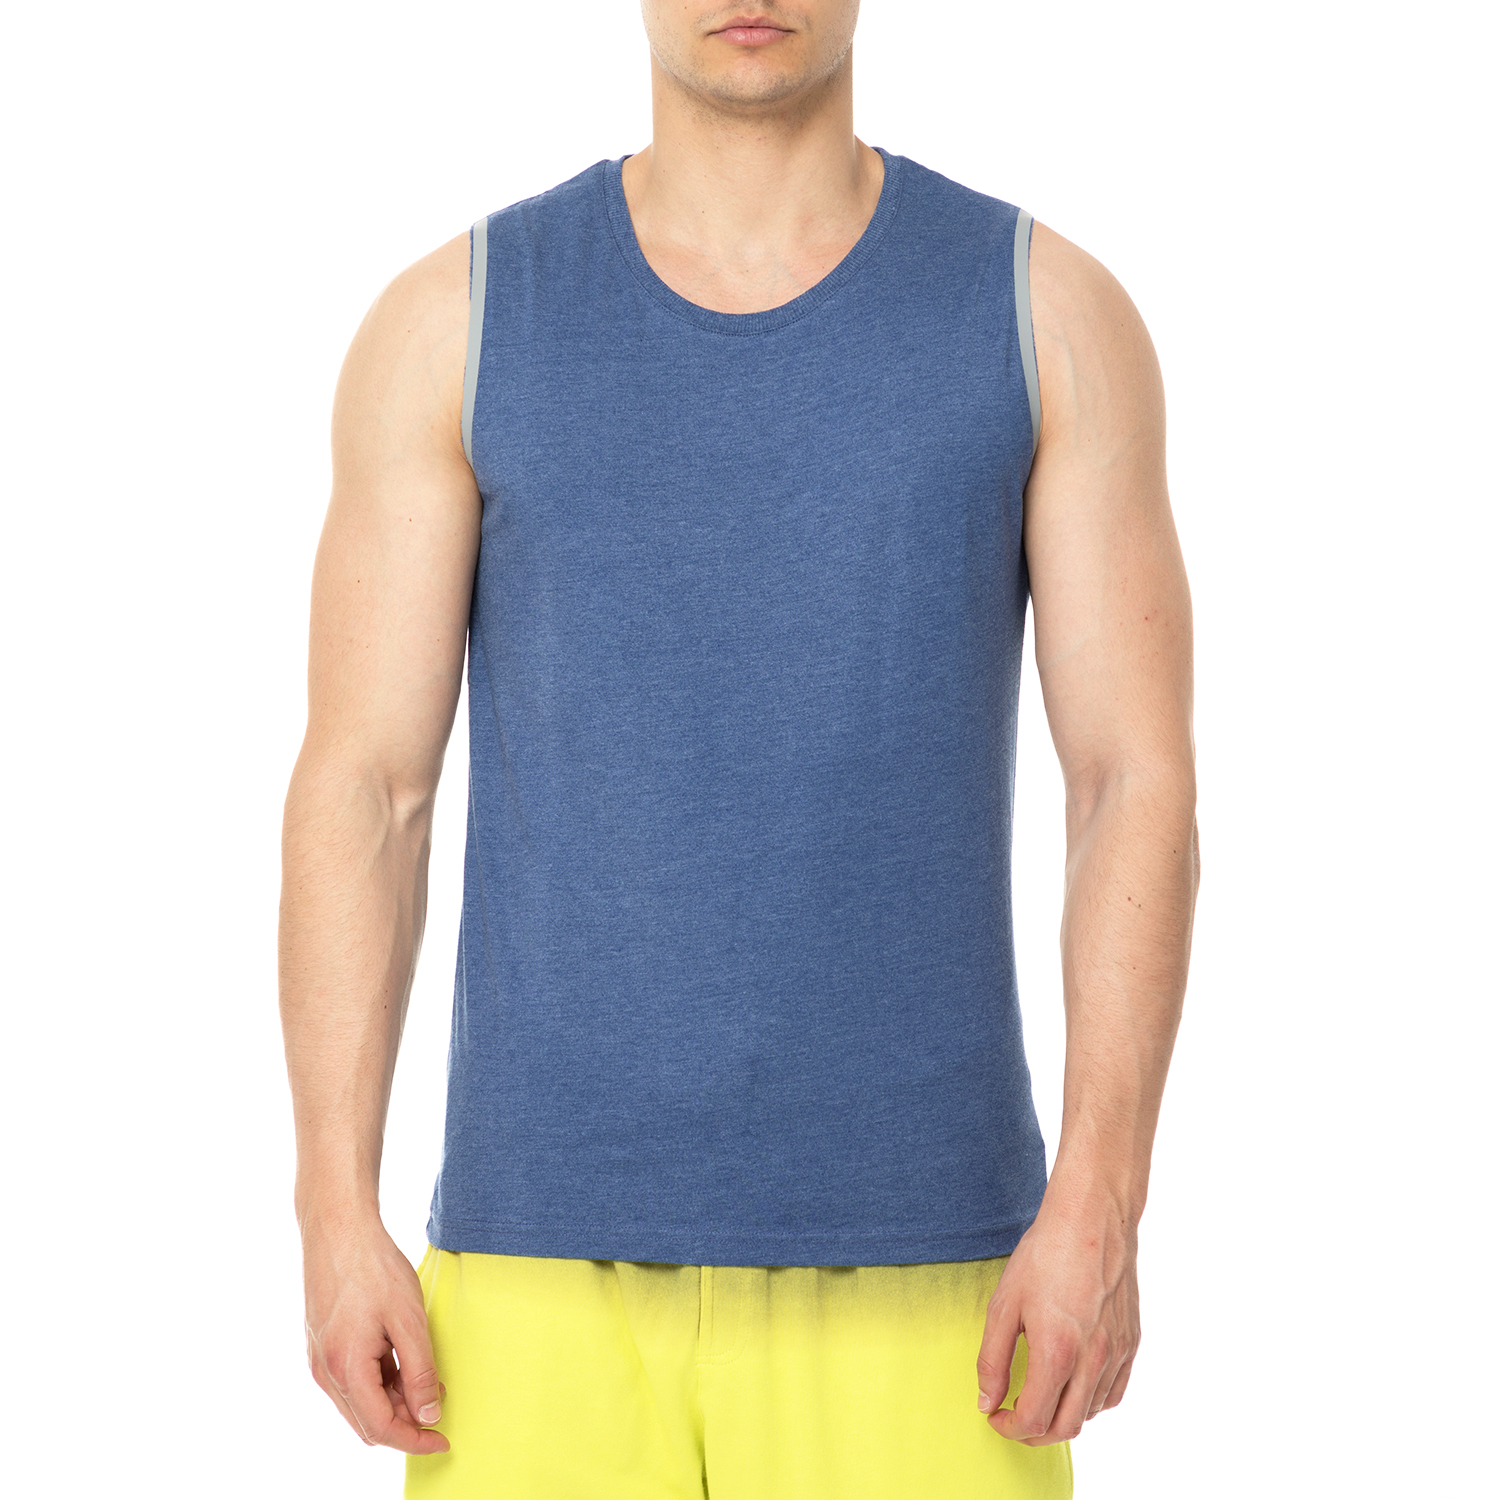 Ανδρικά/Ρούχα/Μπλούζες/Αμάνικες BODYTALK - Ανδρικό αμάνικο φανελάκι CAPSULE BODYTALK μπλε